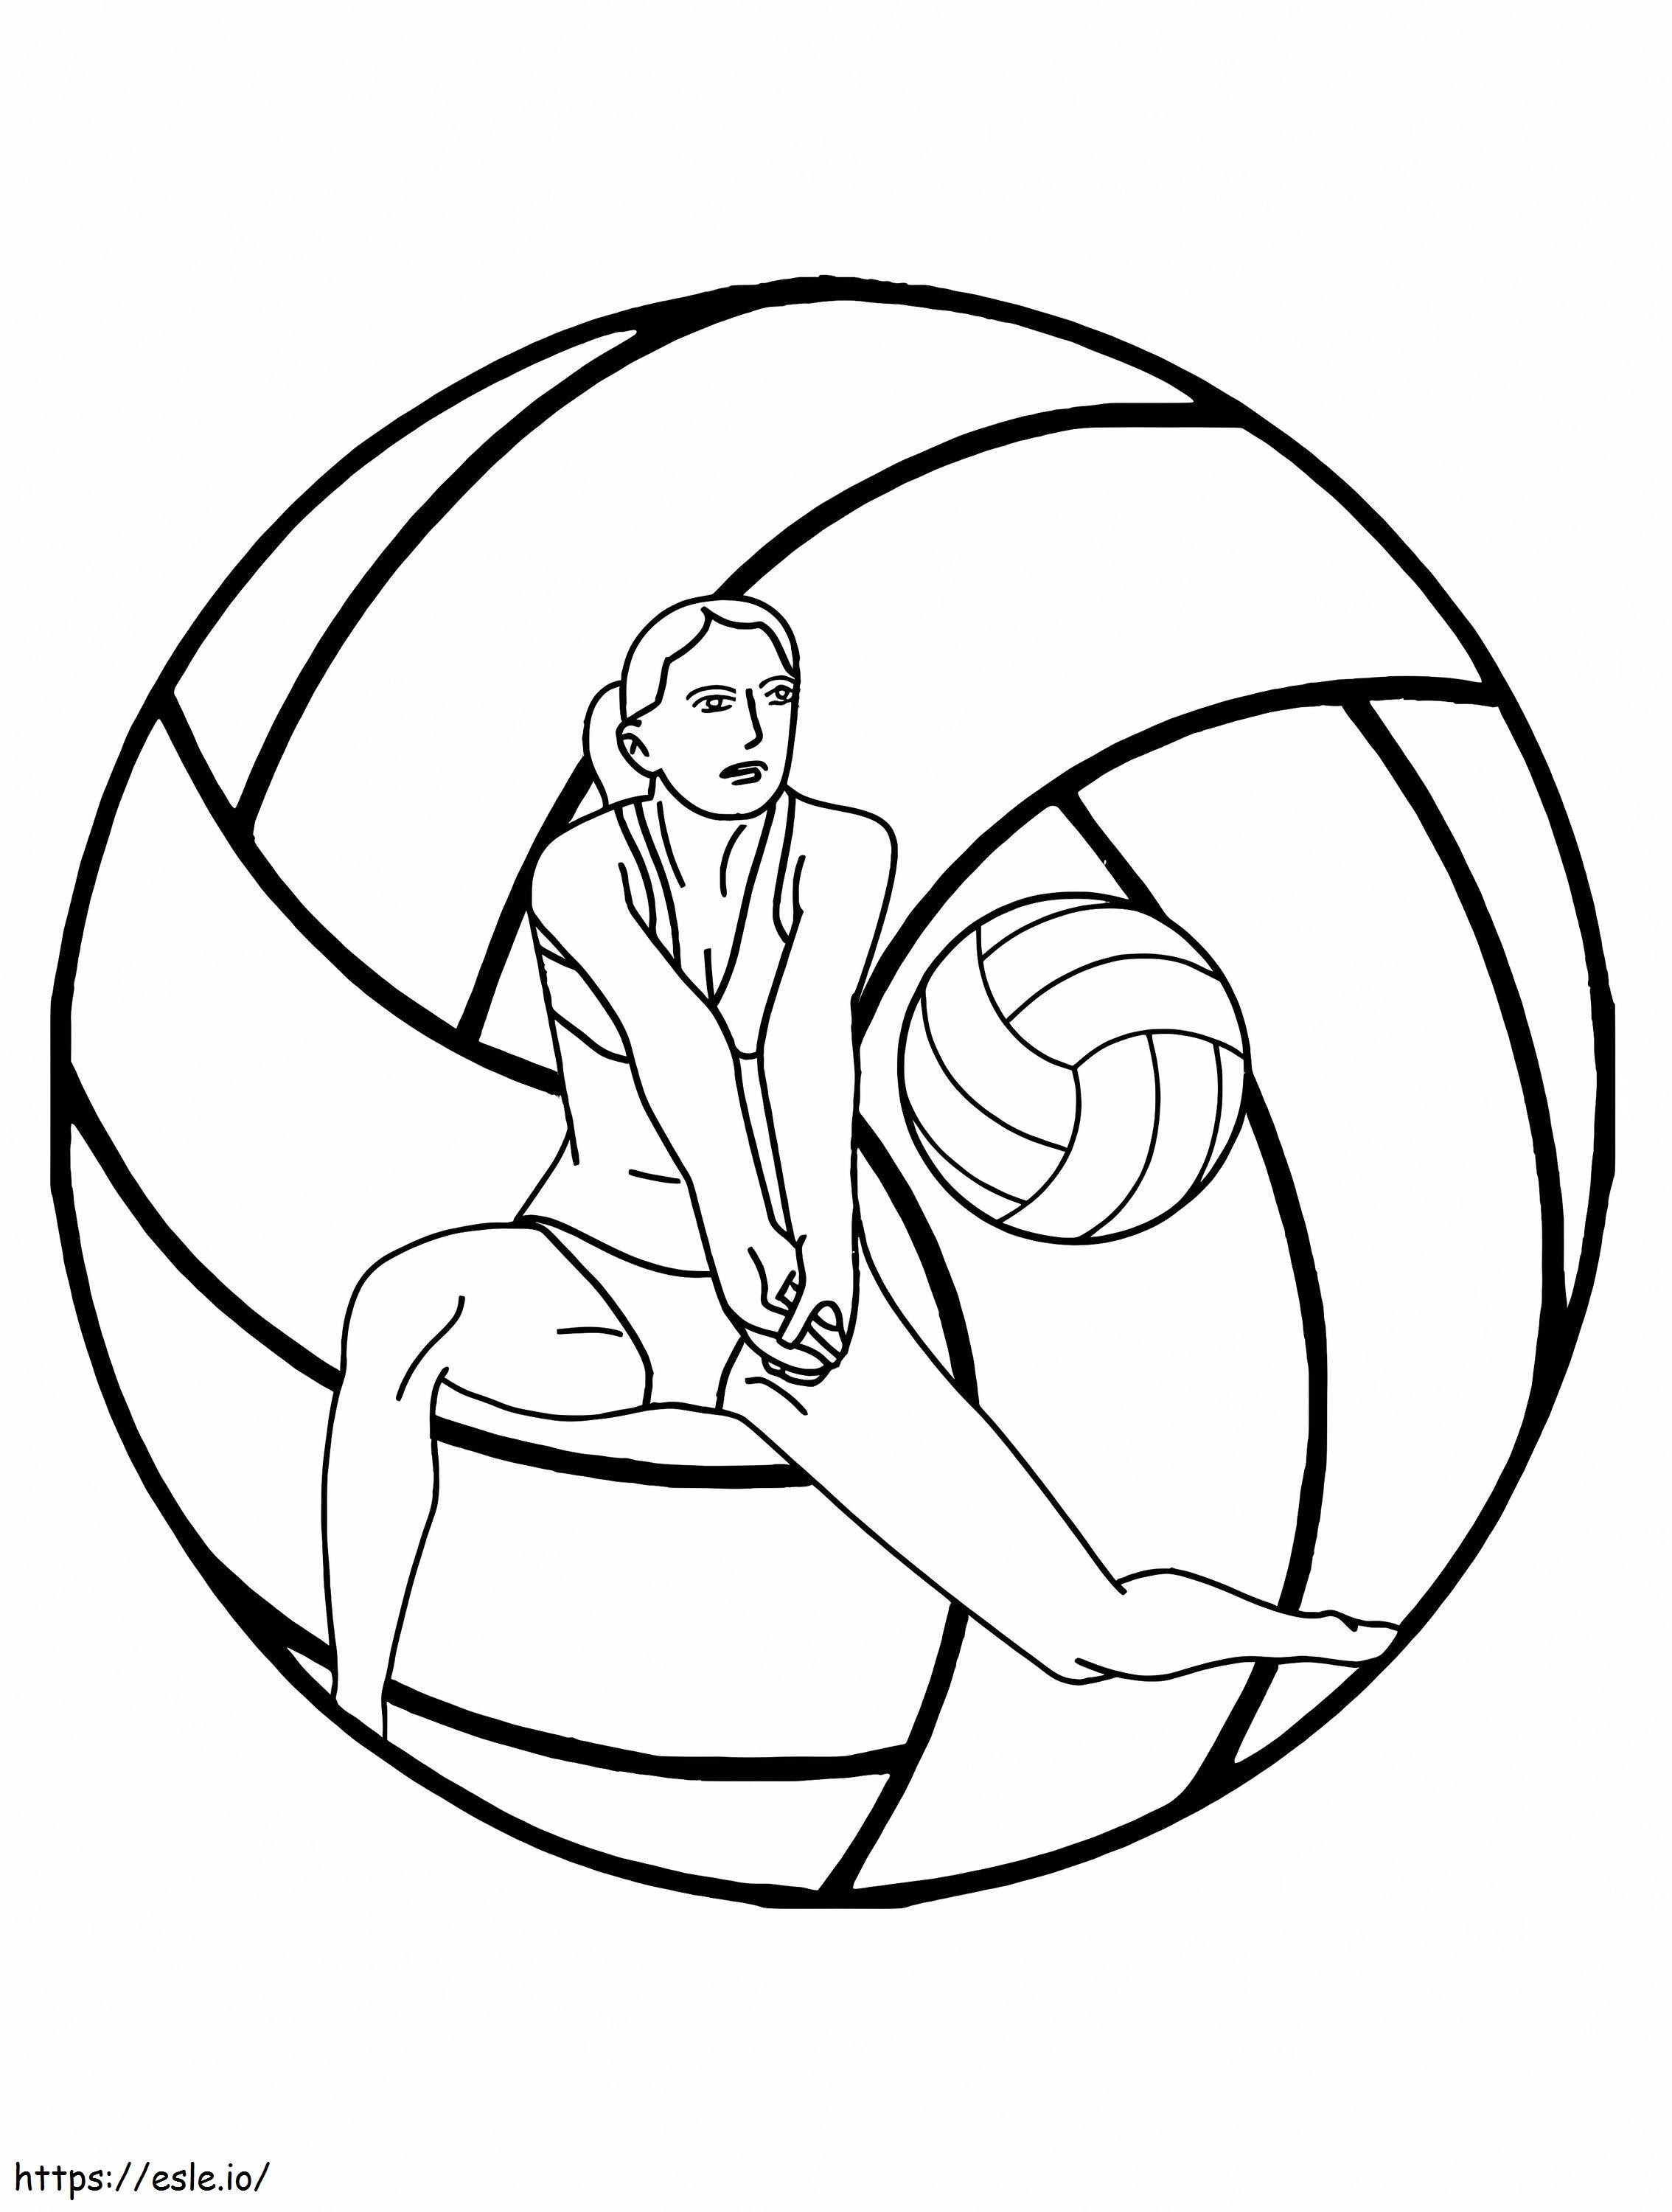 Logo del torneo di pallavolo da colorare